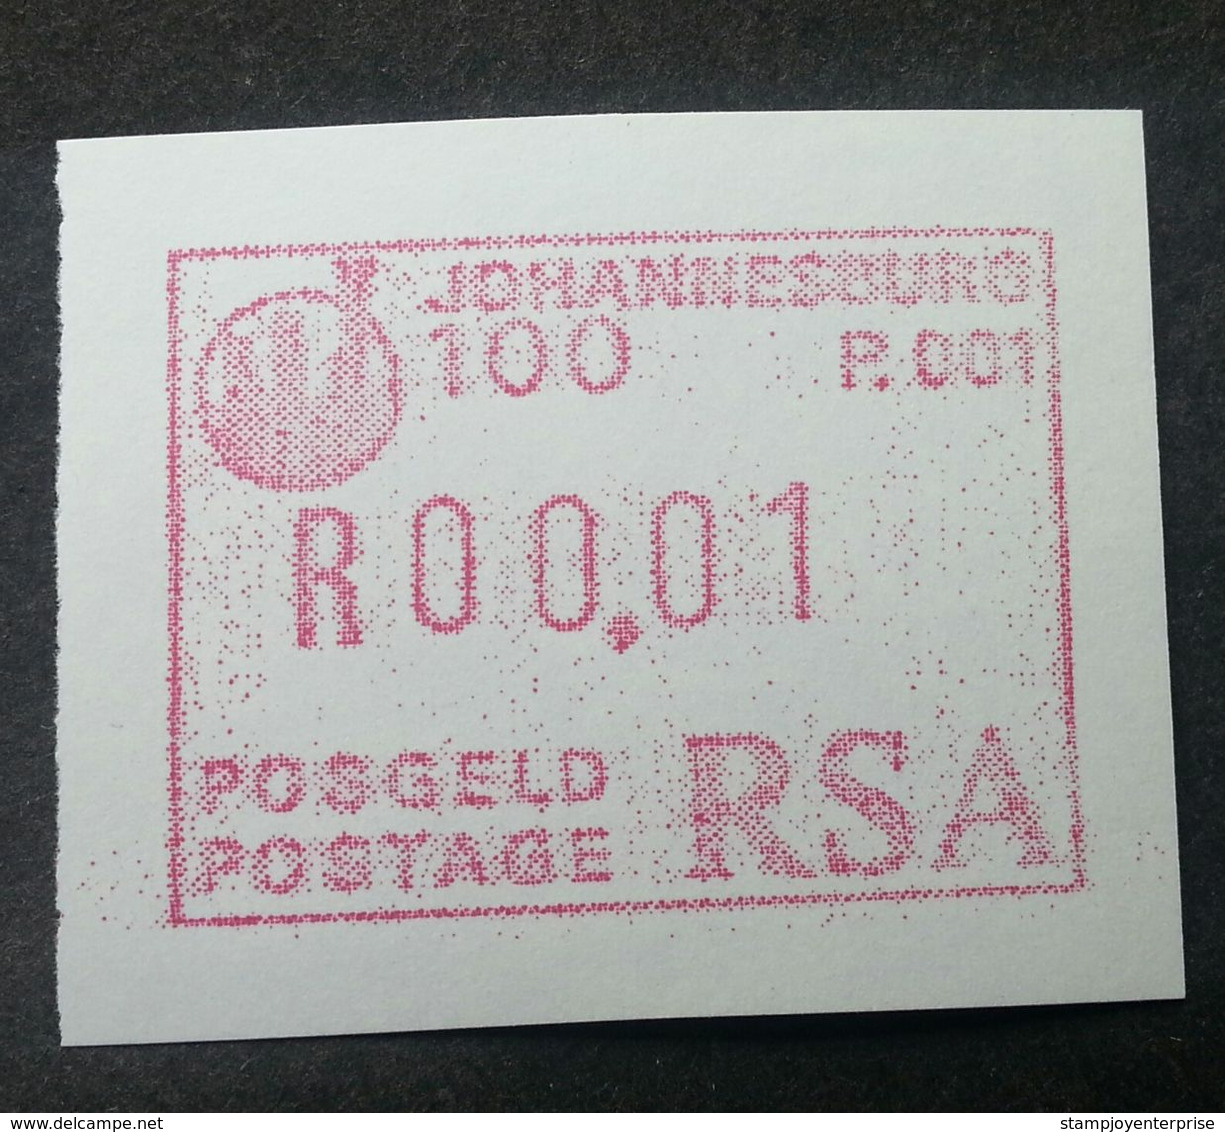 South Africa RSA JOHANNESBURG 1986 ATM (frama Label Stamp) MNH - Vignettes D'affranchissement (Frama)